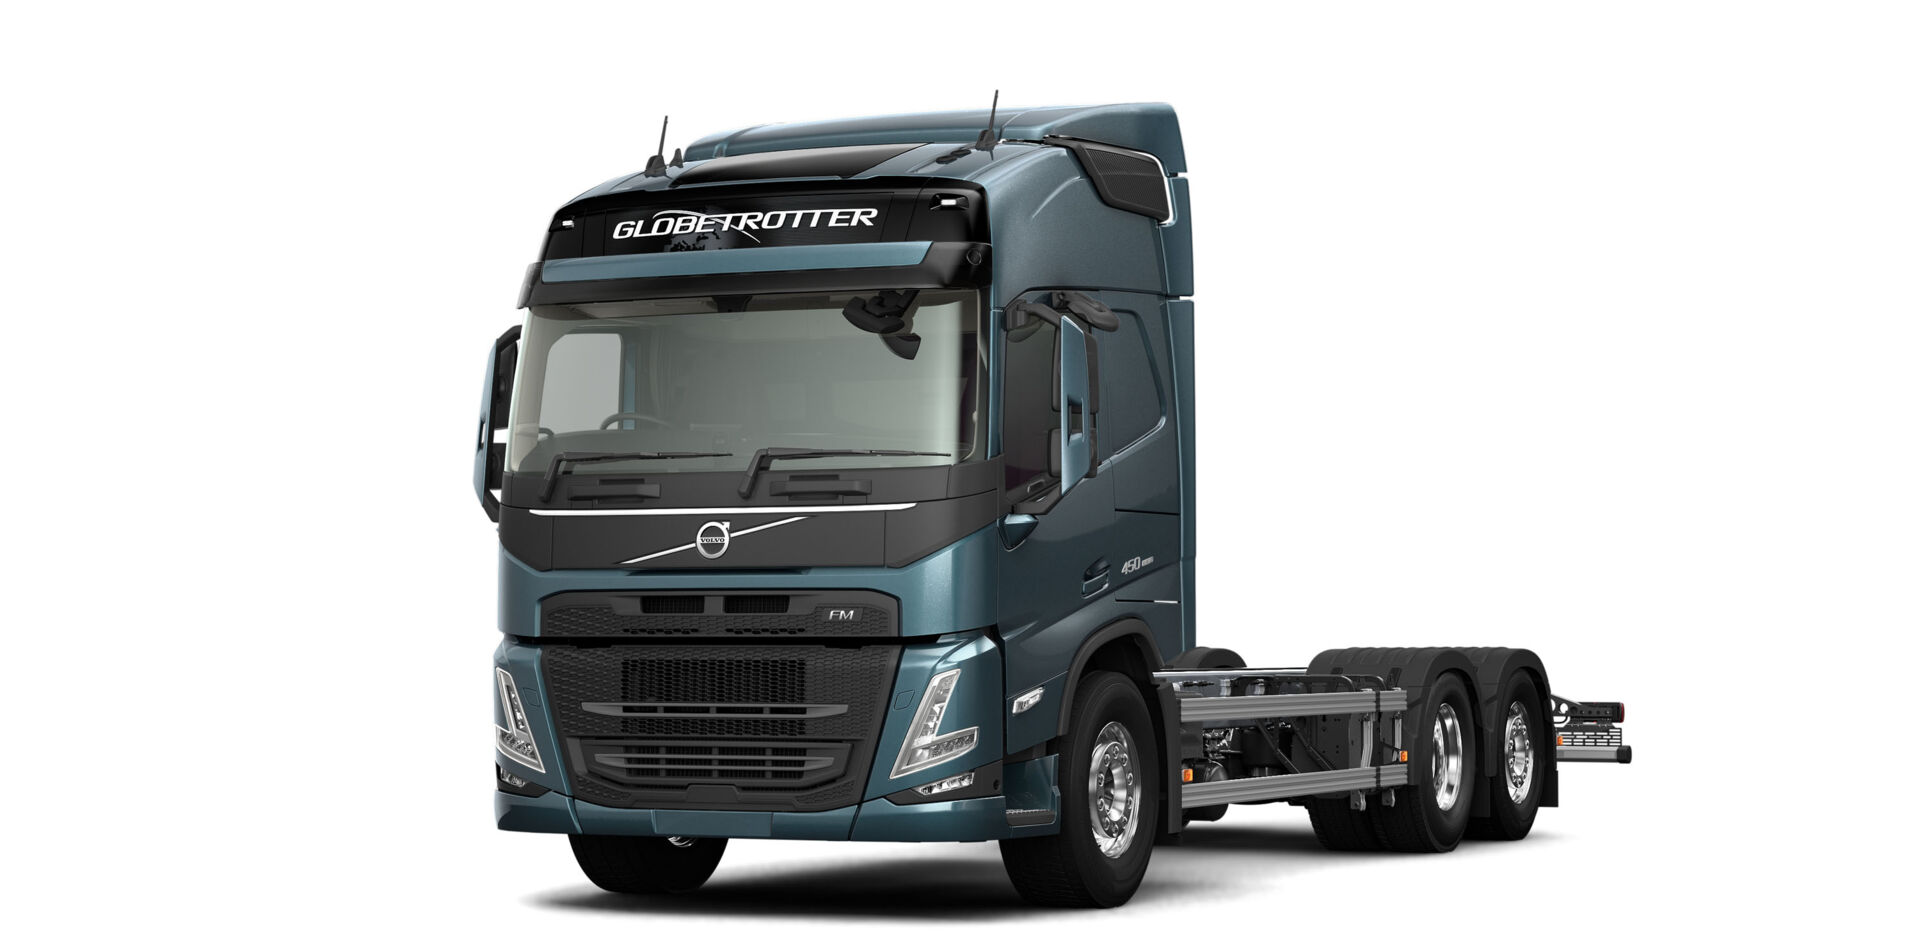 LVS-Bedrijfswagens_Renault Trucks Experience Centre (17)_